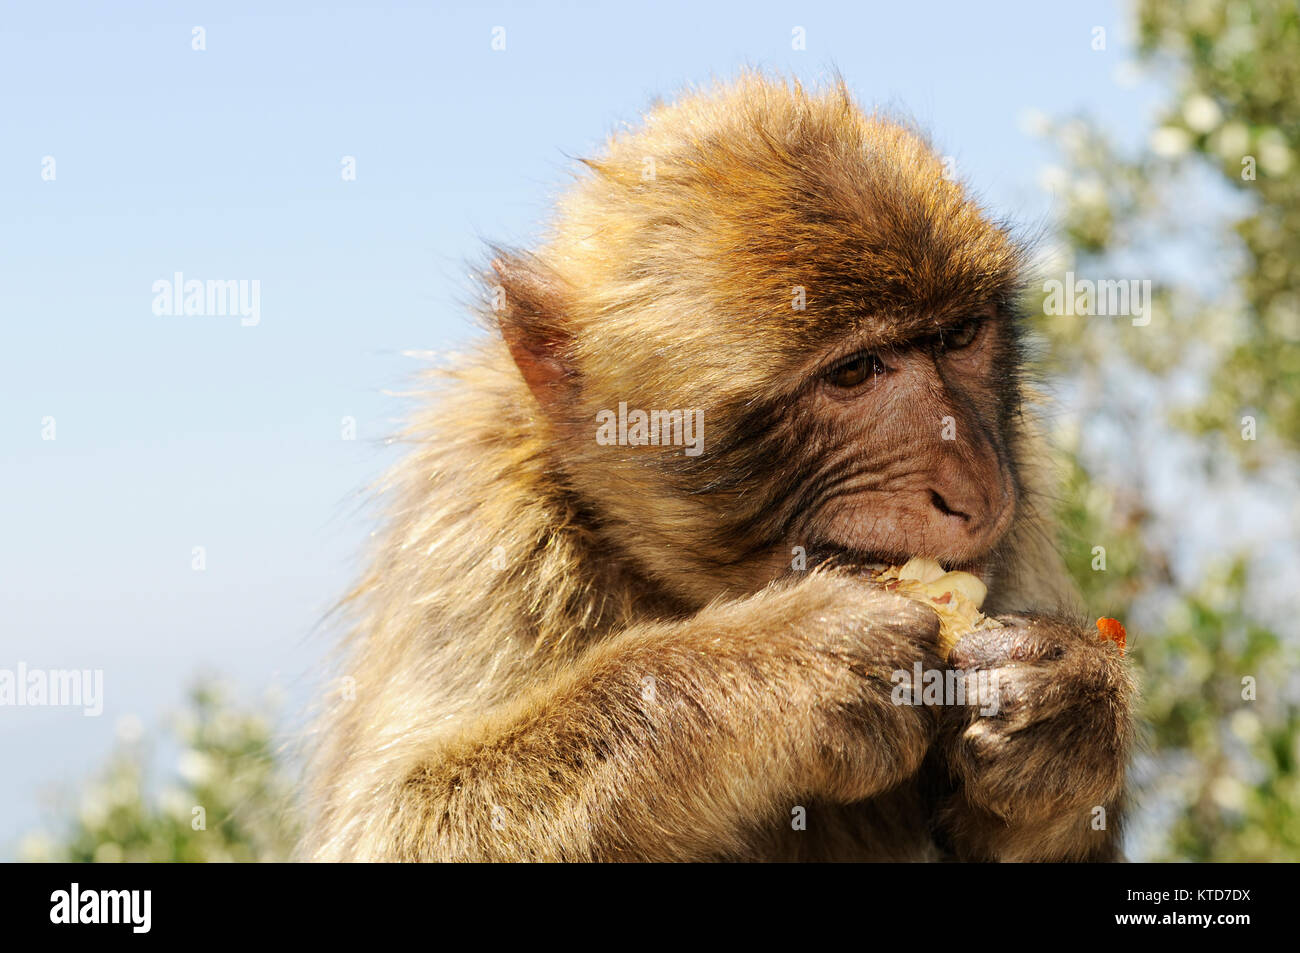 Macaco de Berbería (Macaca sylvanus) Gibraltar. Macaco de Berbería (Macaca sylvanus), también conocida como: Barbary APE APE y rock. Los macacos (Macaca sylva Foto de stock